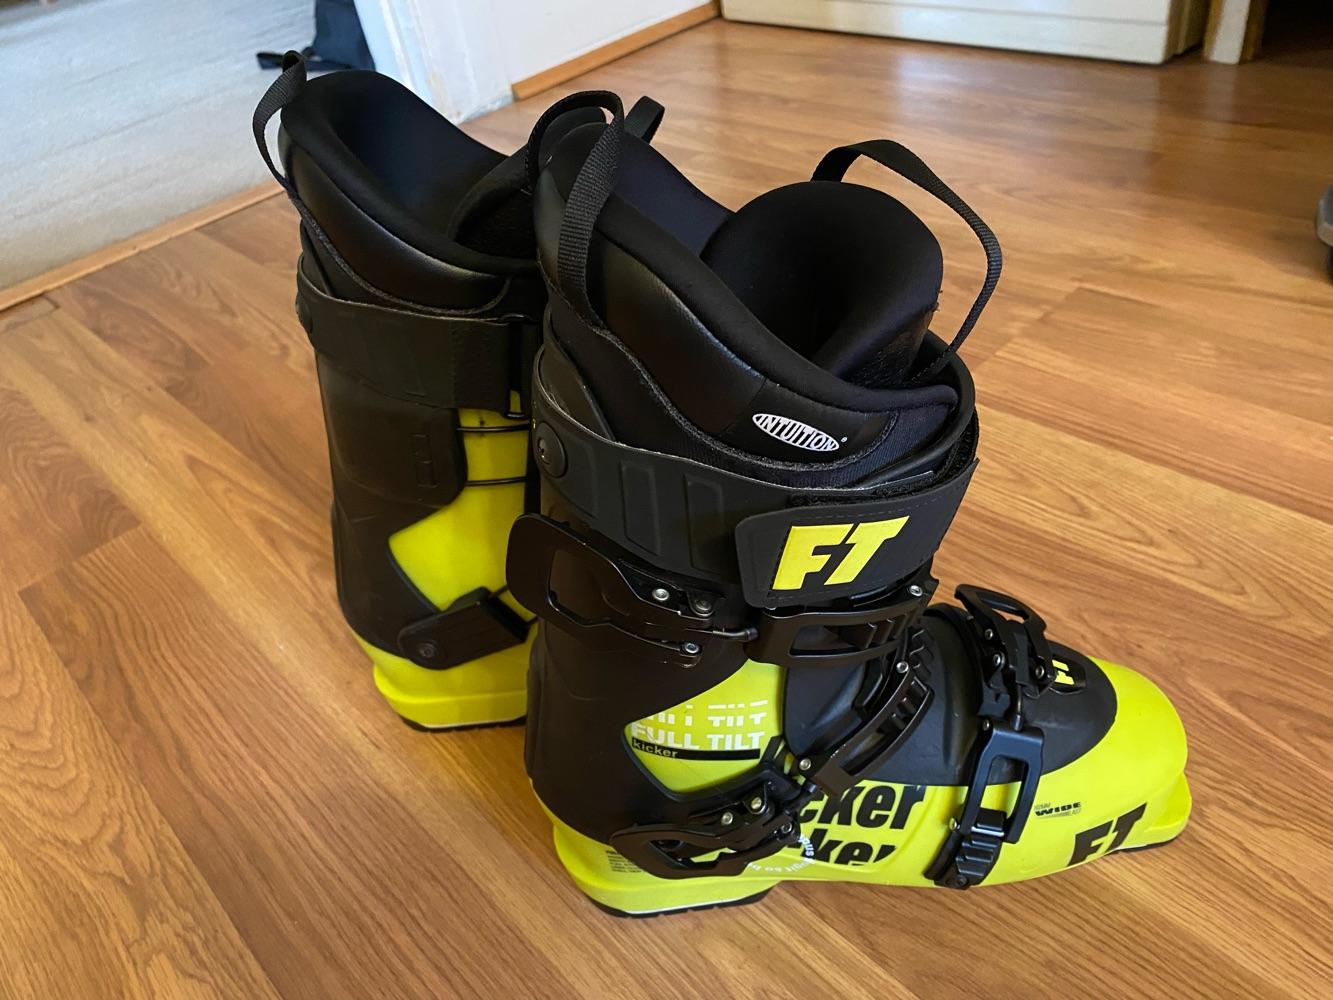 Full Tilt Kicker Ski Boots